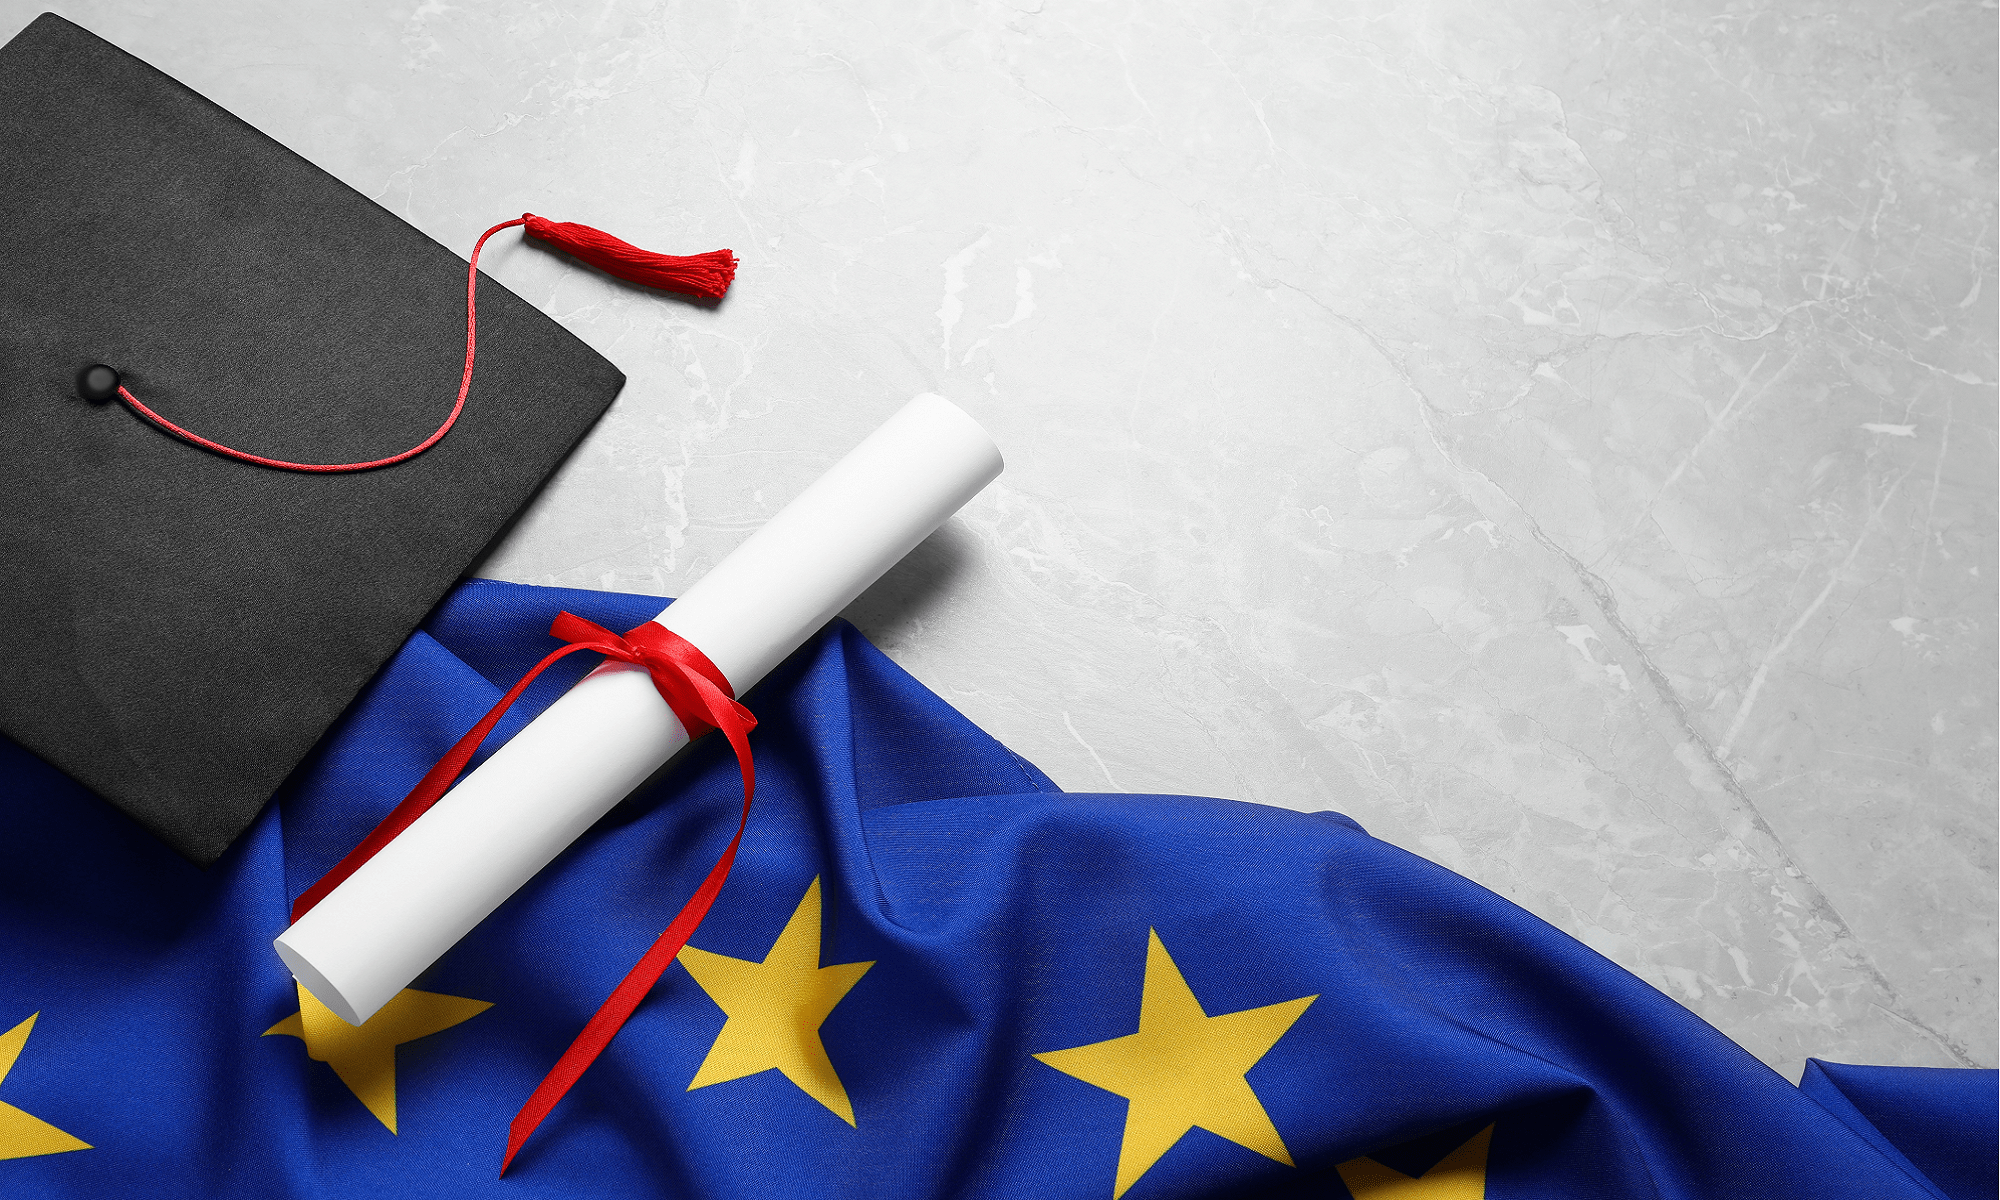 La Commission européenne souhaite créer un diplôme reconnu dans toute l’Union européenne